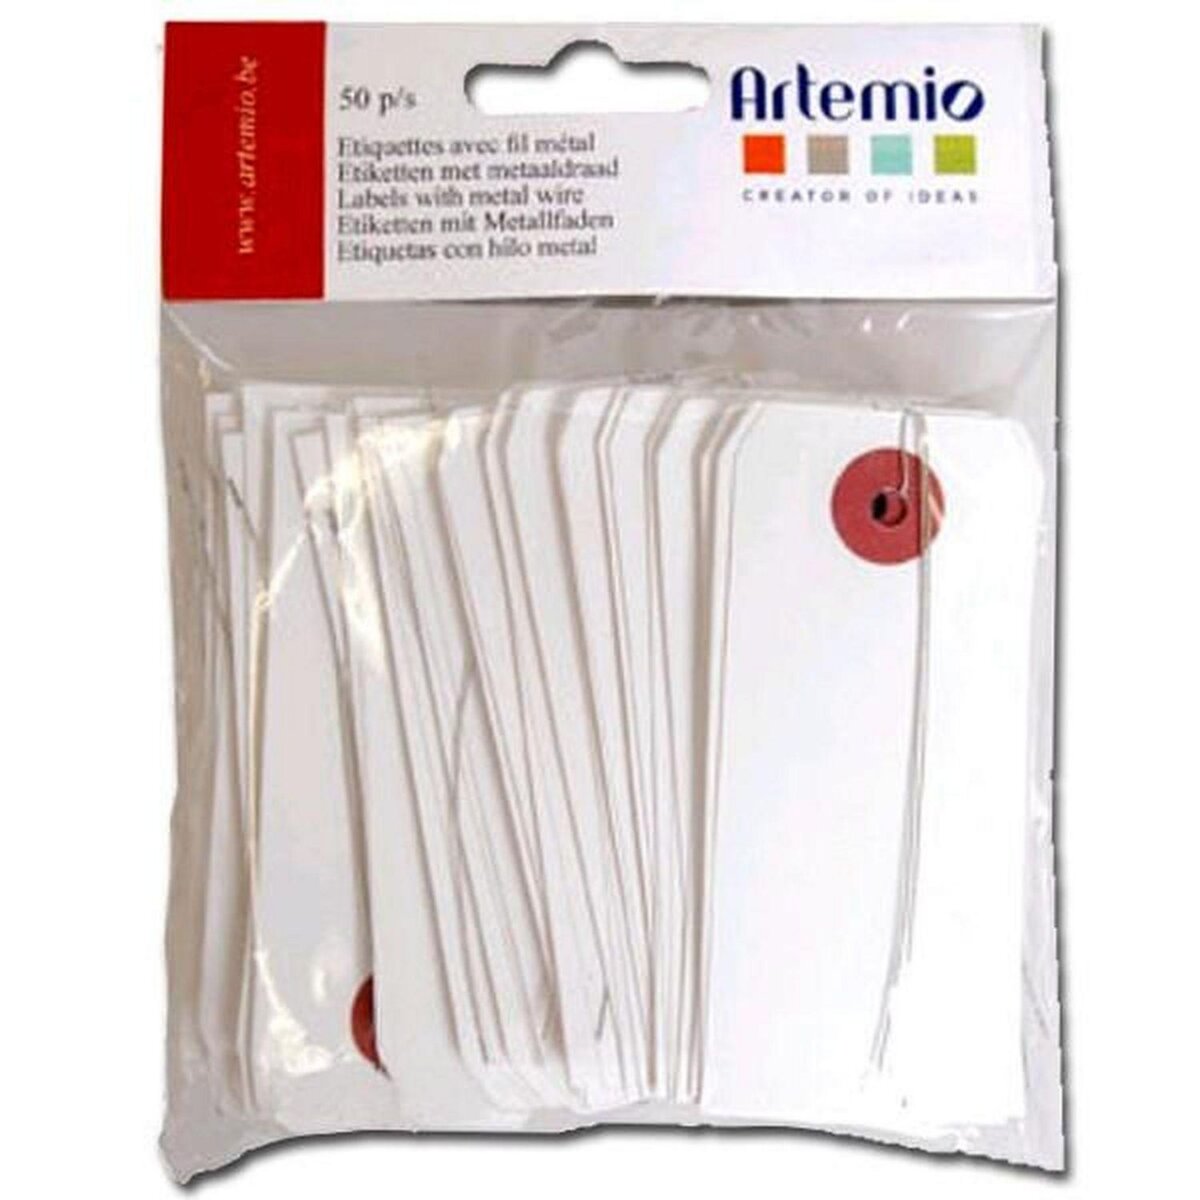 Artemio 150 étiquettes blanches 9 x 4 cm avec fil métal